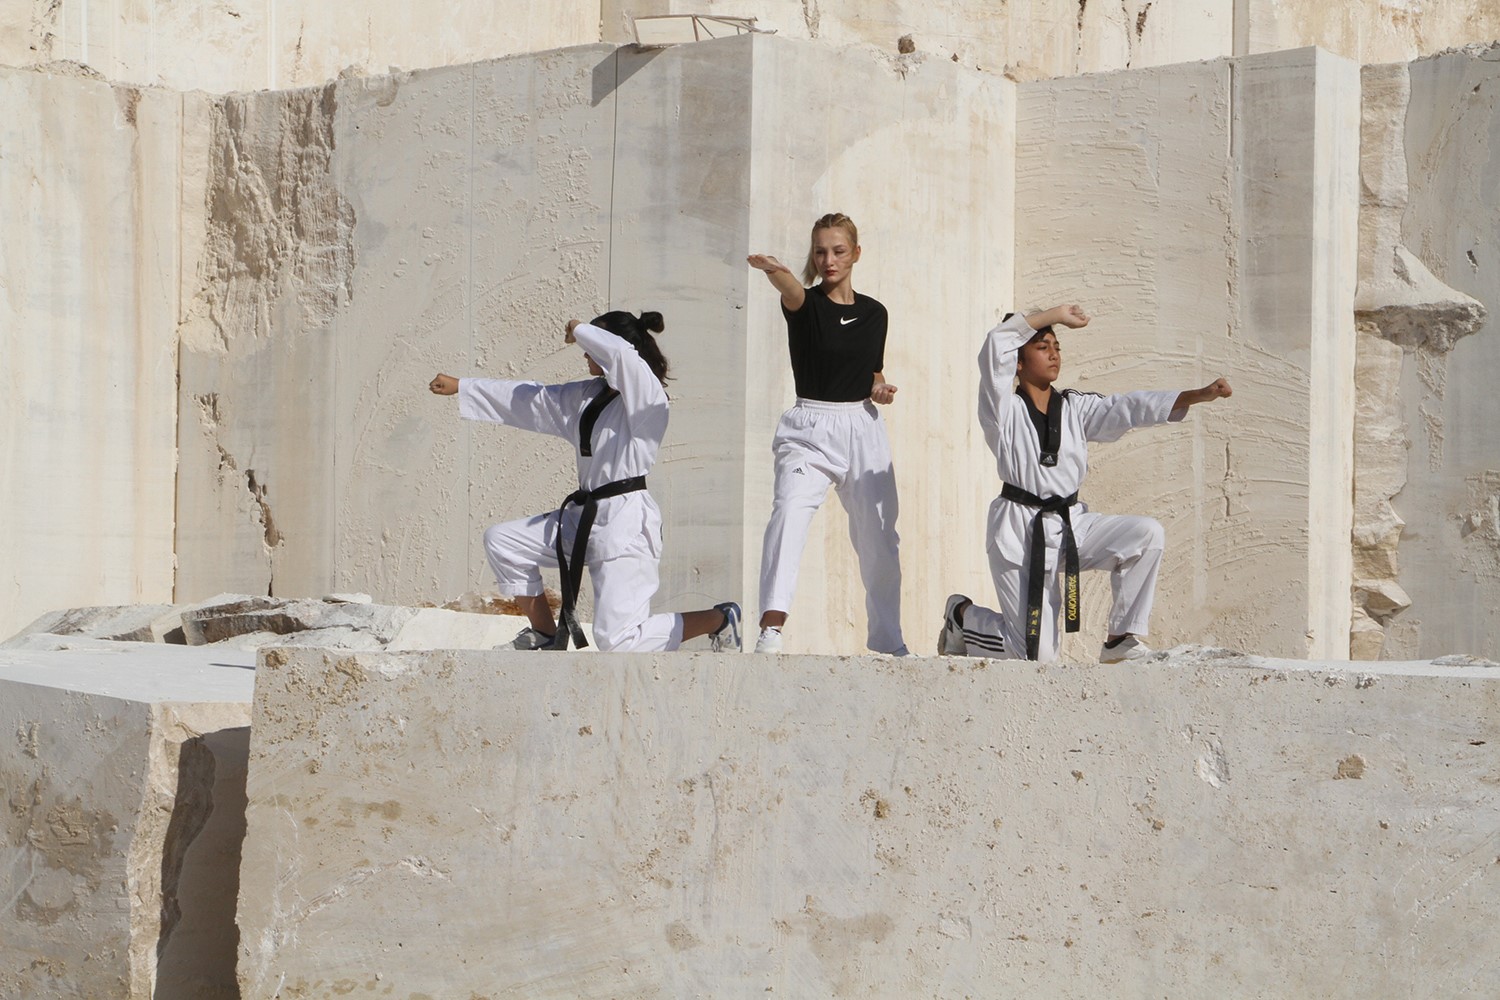 Les joueurs nationaux de taekwondo s'entraînent sur des travertins vieux de plusieurs millions d'années